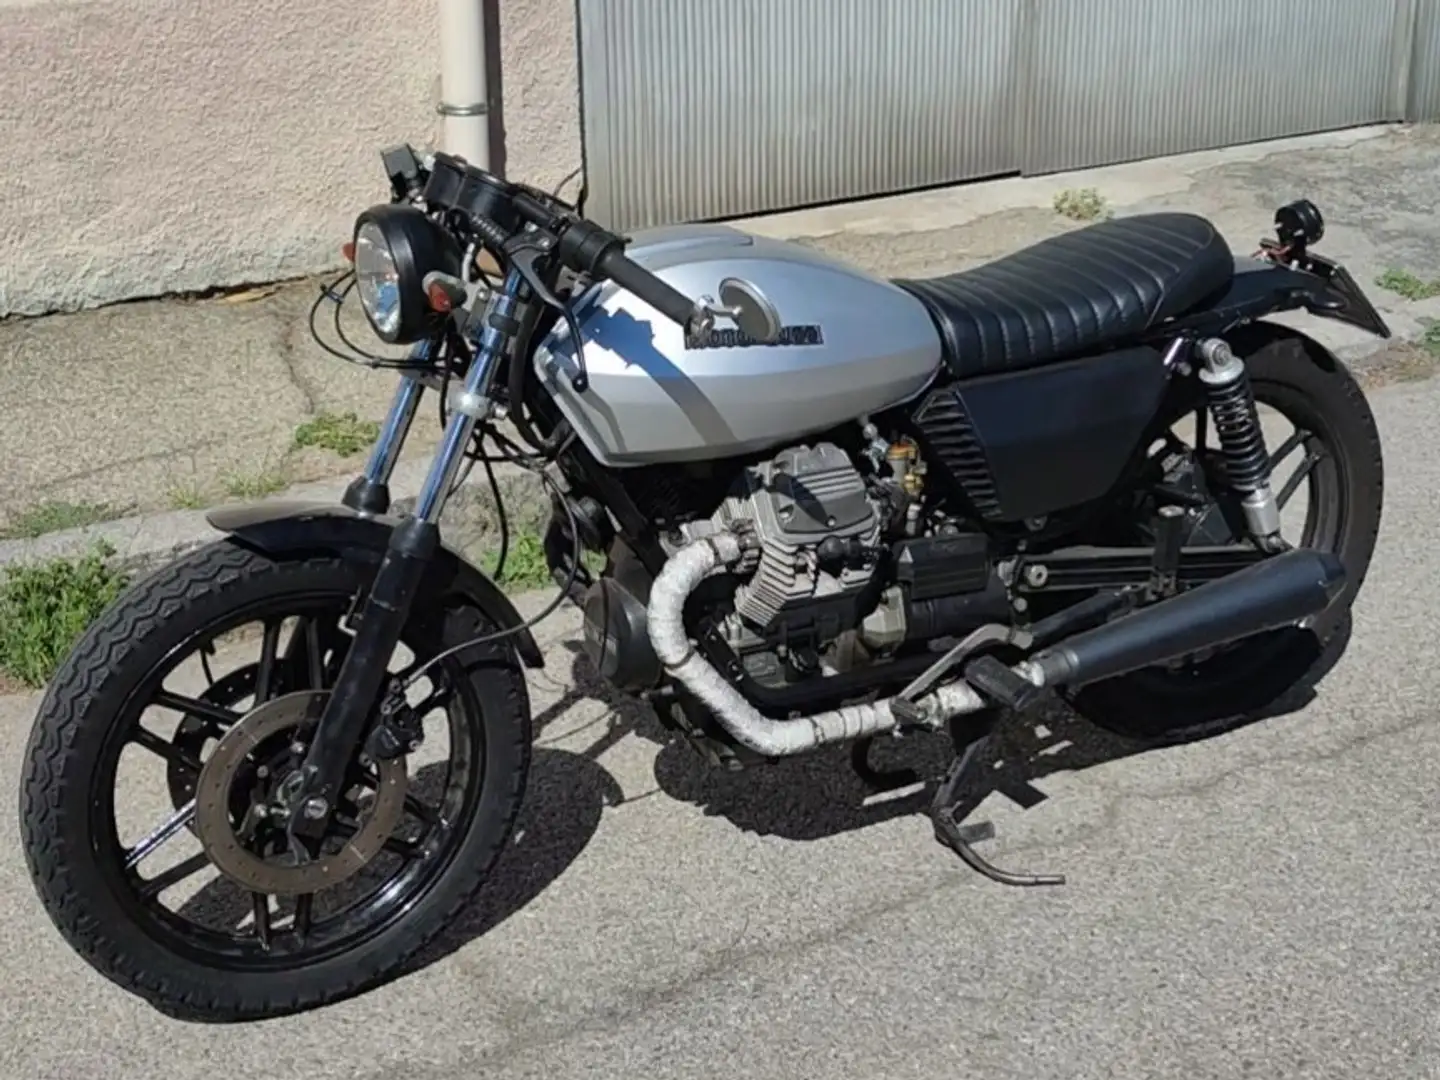 Moto Guzzi V 50 Silver - 1